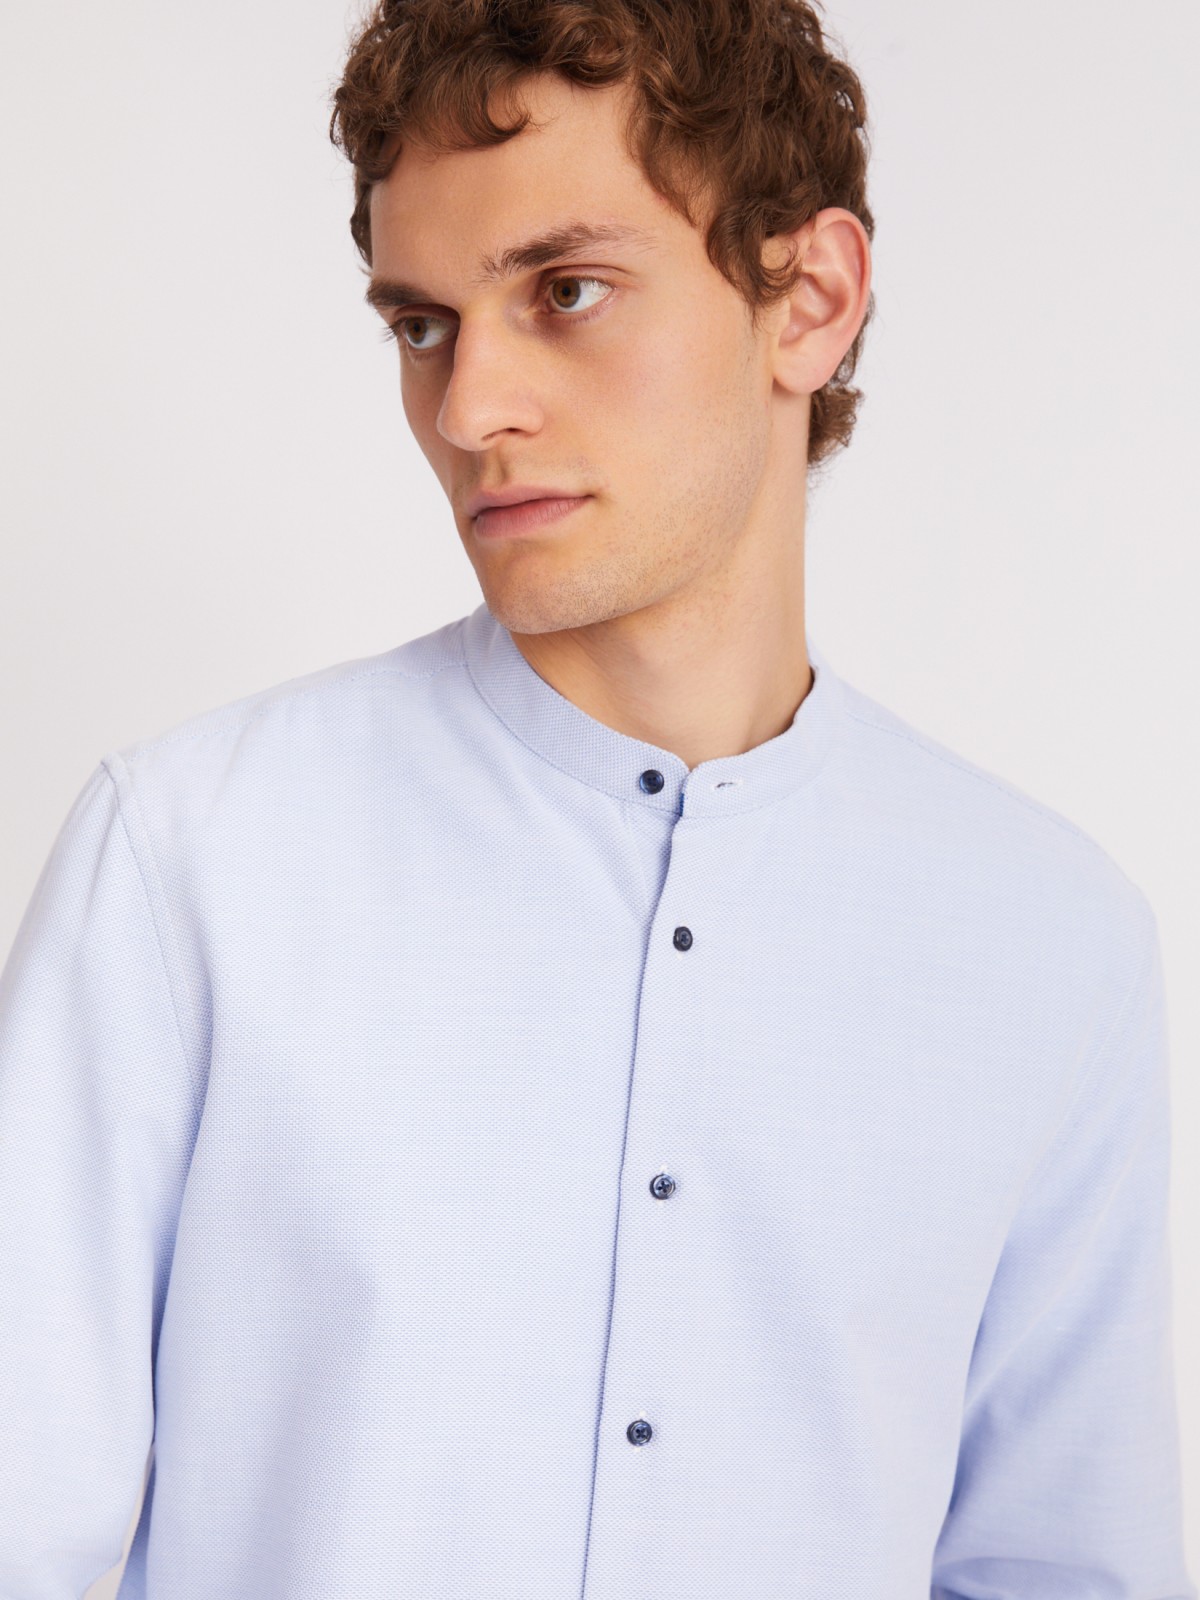 Офисная рубашка с воротником-стойкой и длинным рукавом zolla 013312159023, цвет светло-голубой, размер S - фото 5